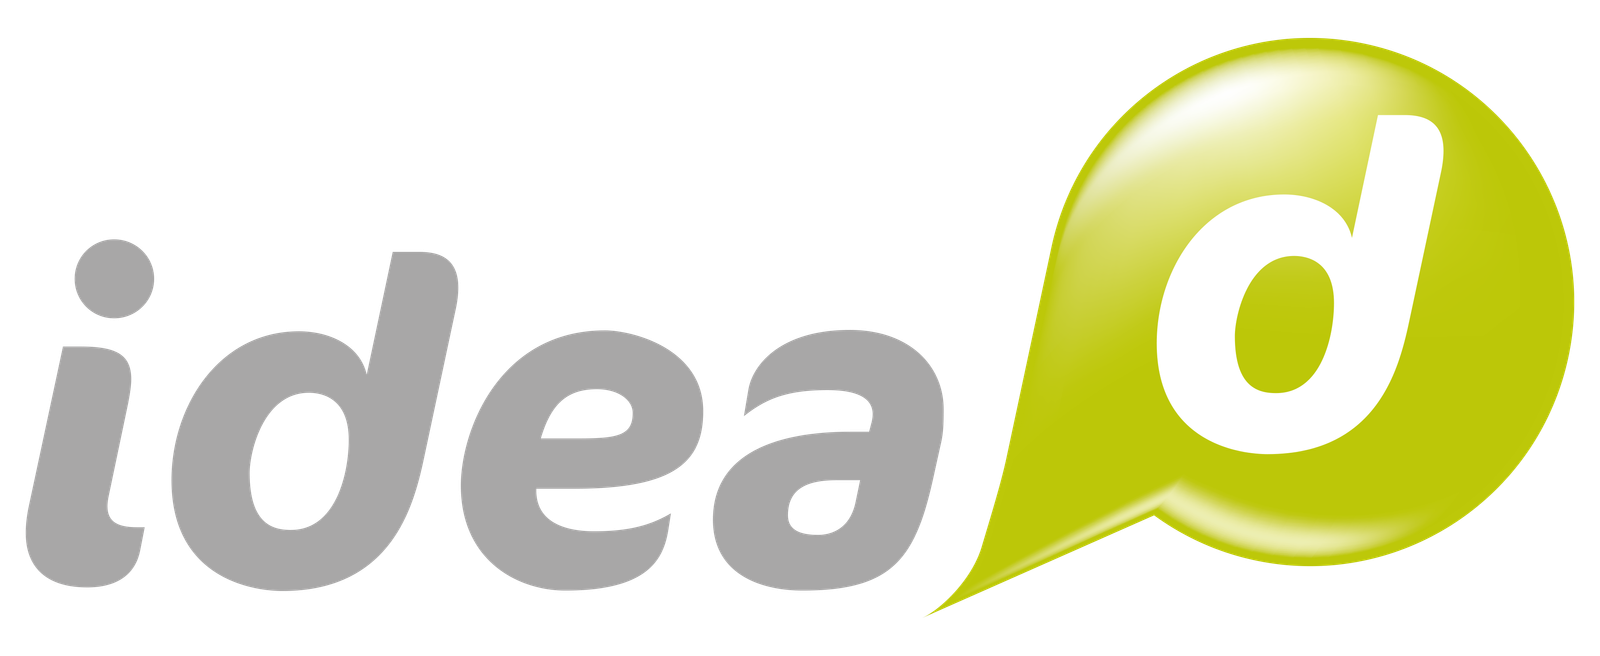 Logo_Idea_D